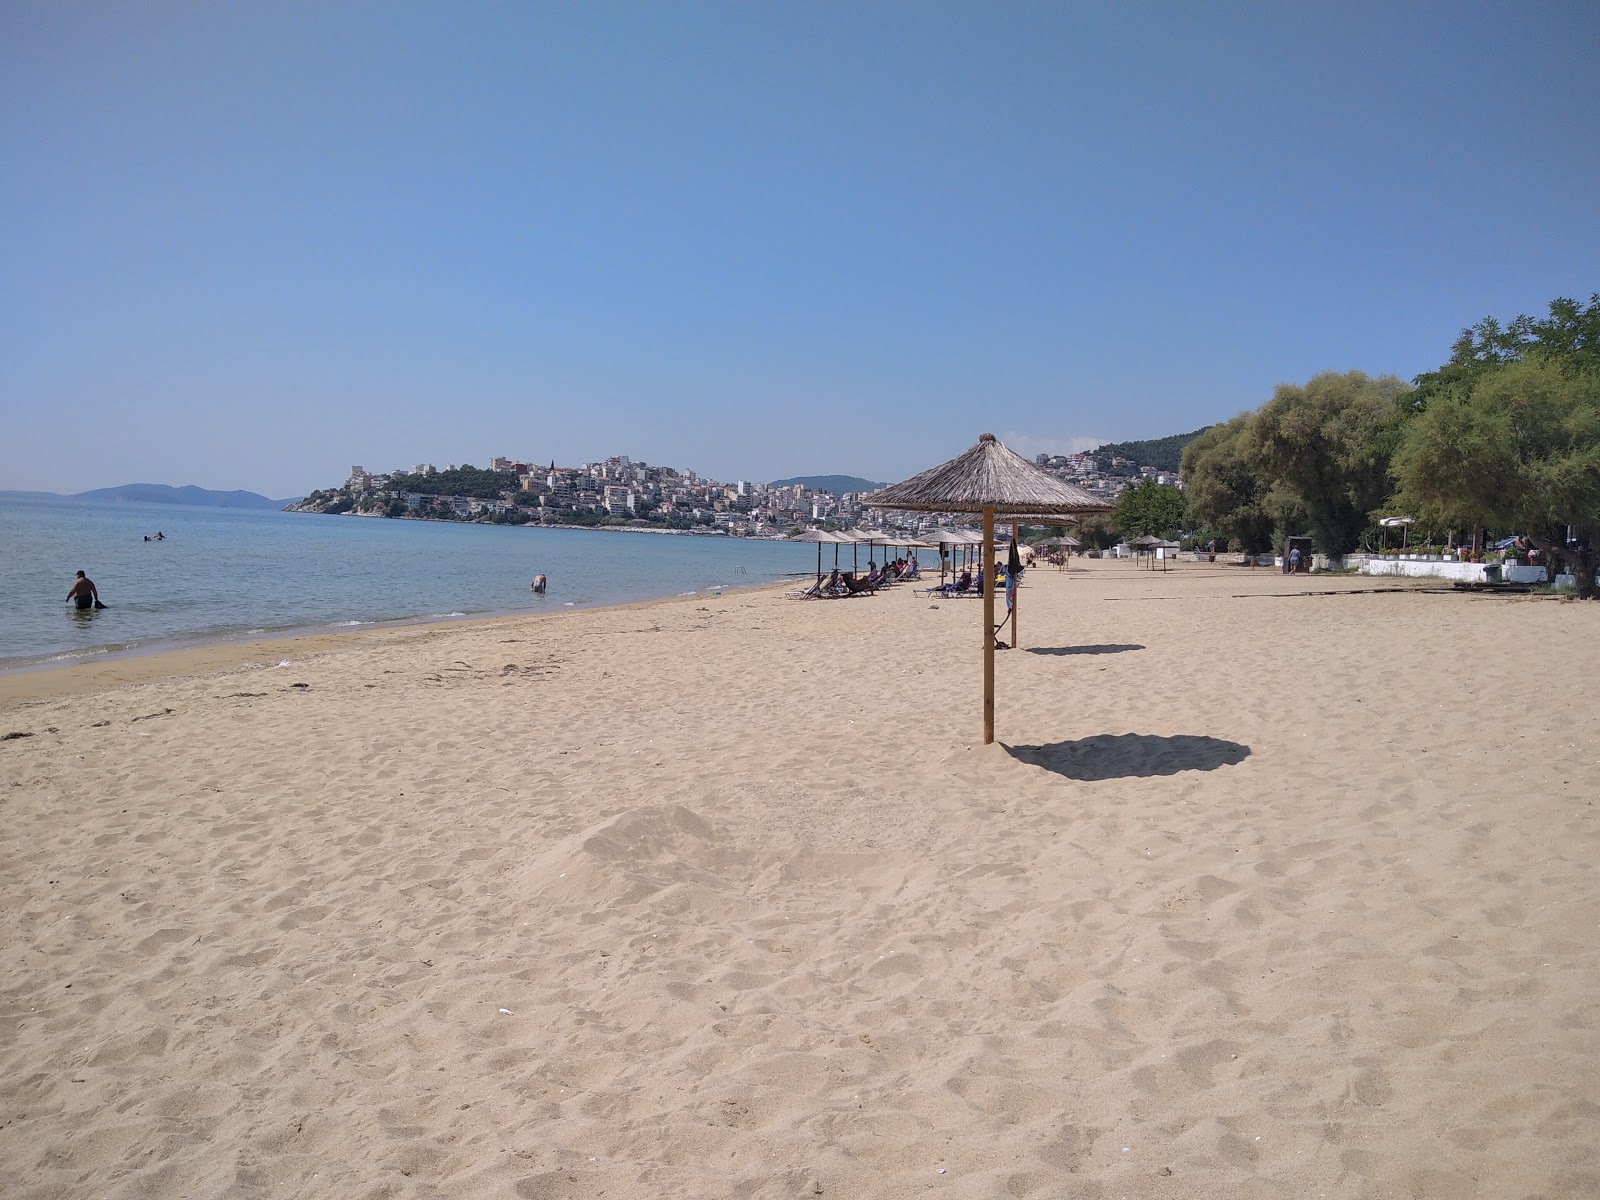 Foto van Perigiali beach met hoog niveau van netheid